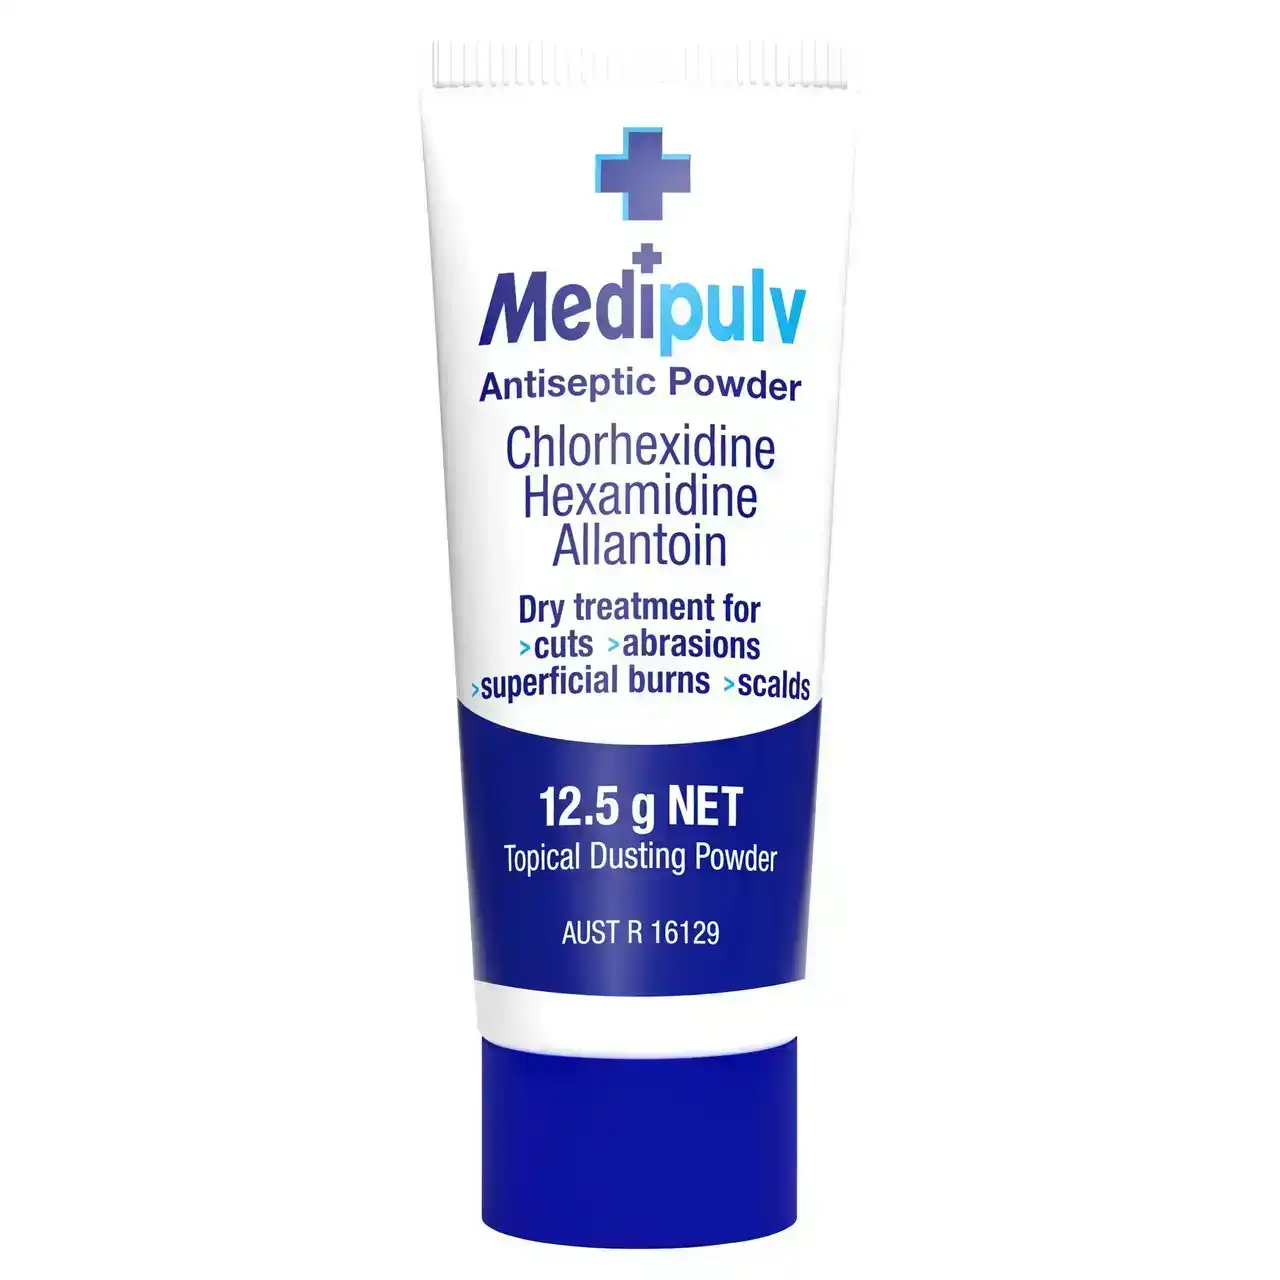 Medi Pulv Antiseptic Powder 12.5g